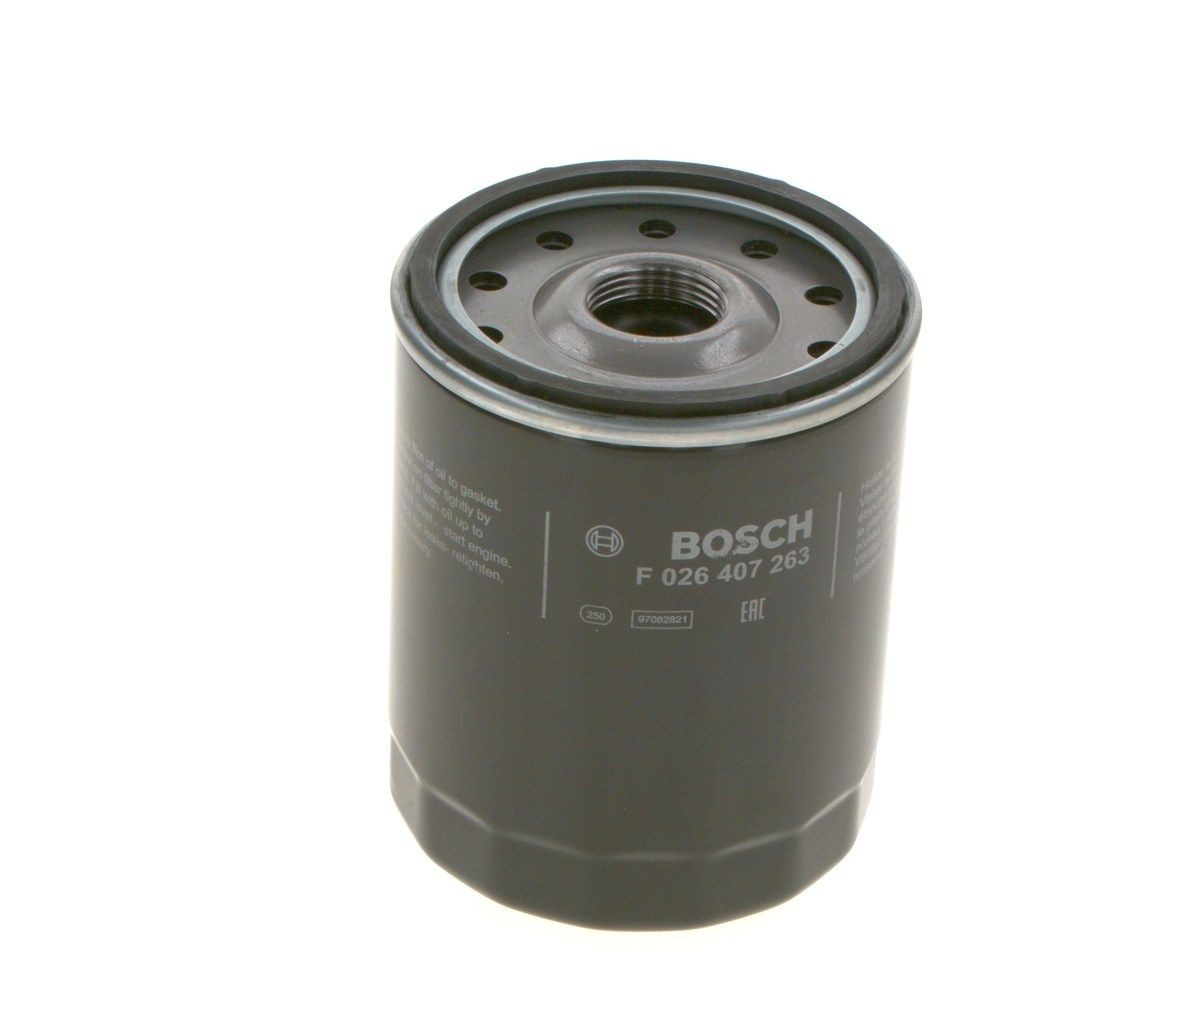 BOSCH Oil filter F 026 407 263